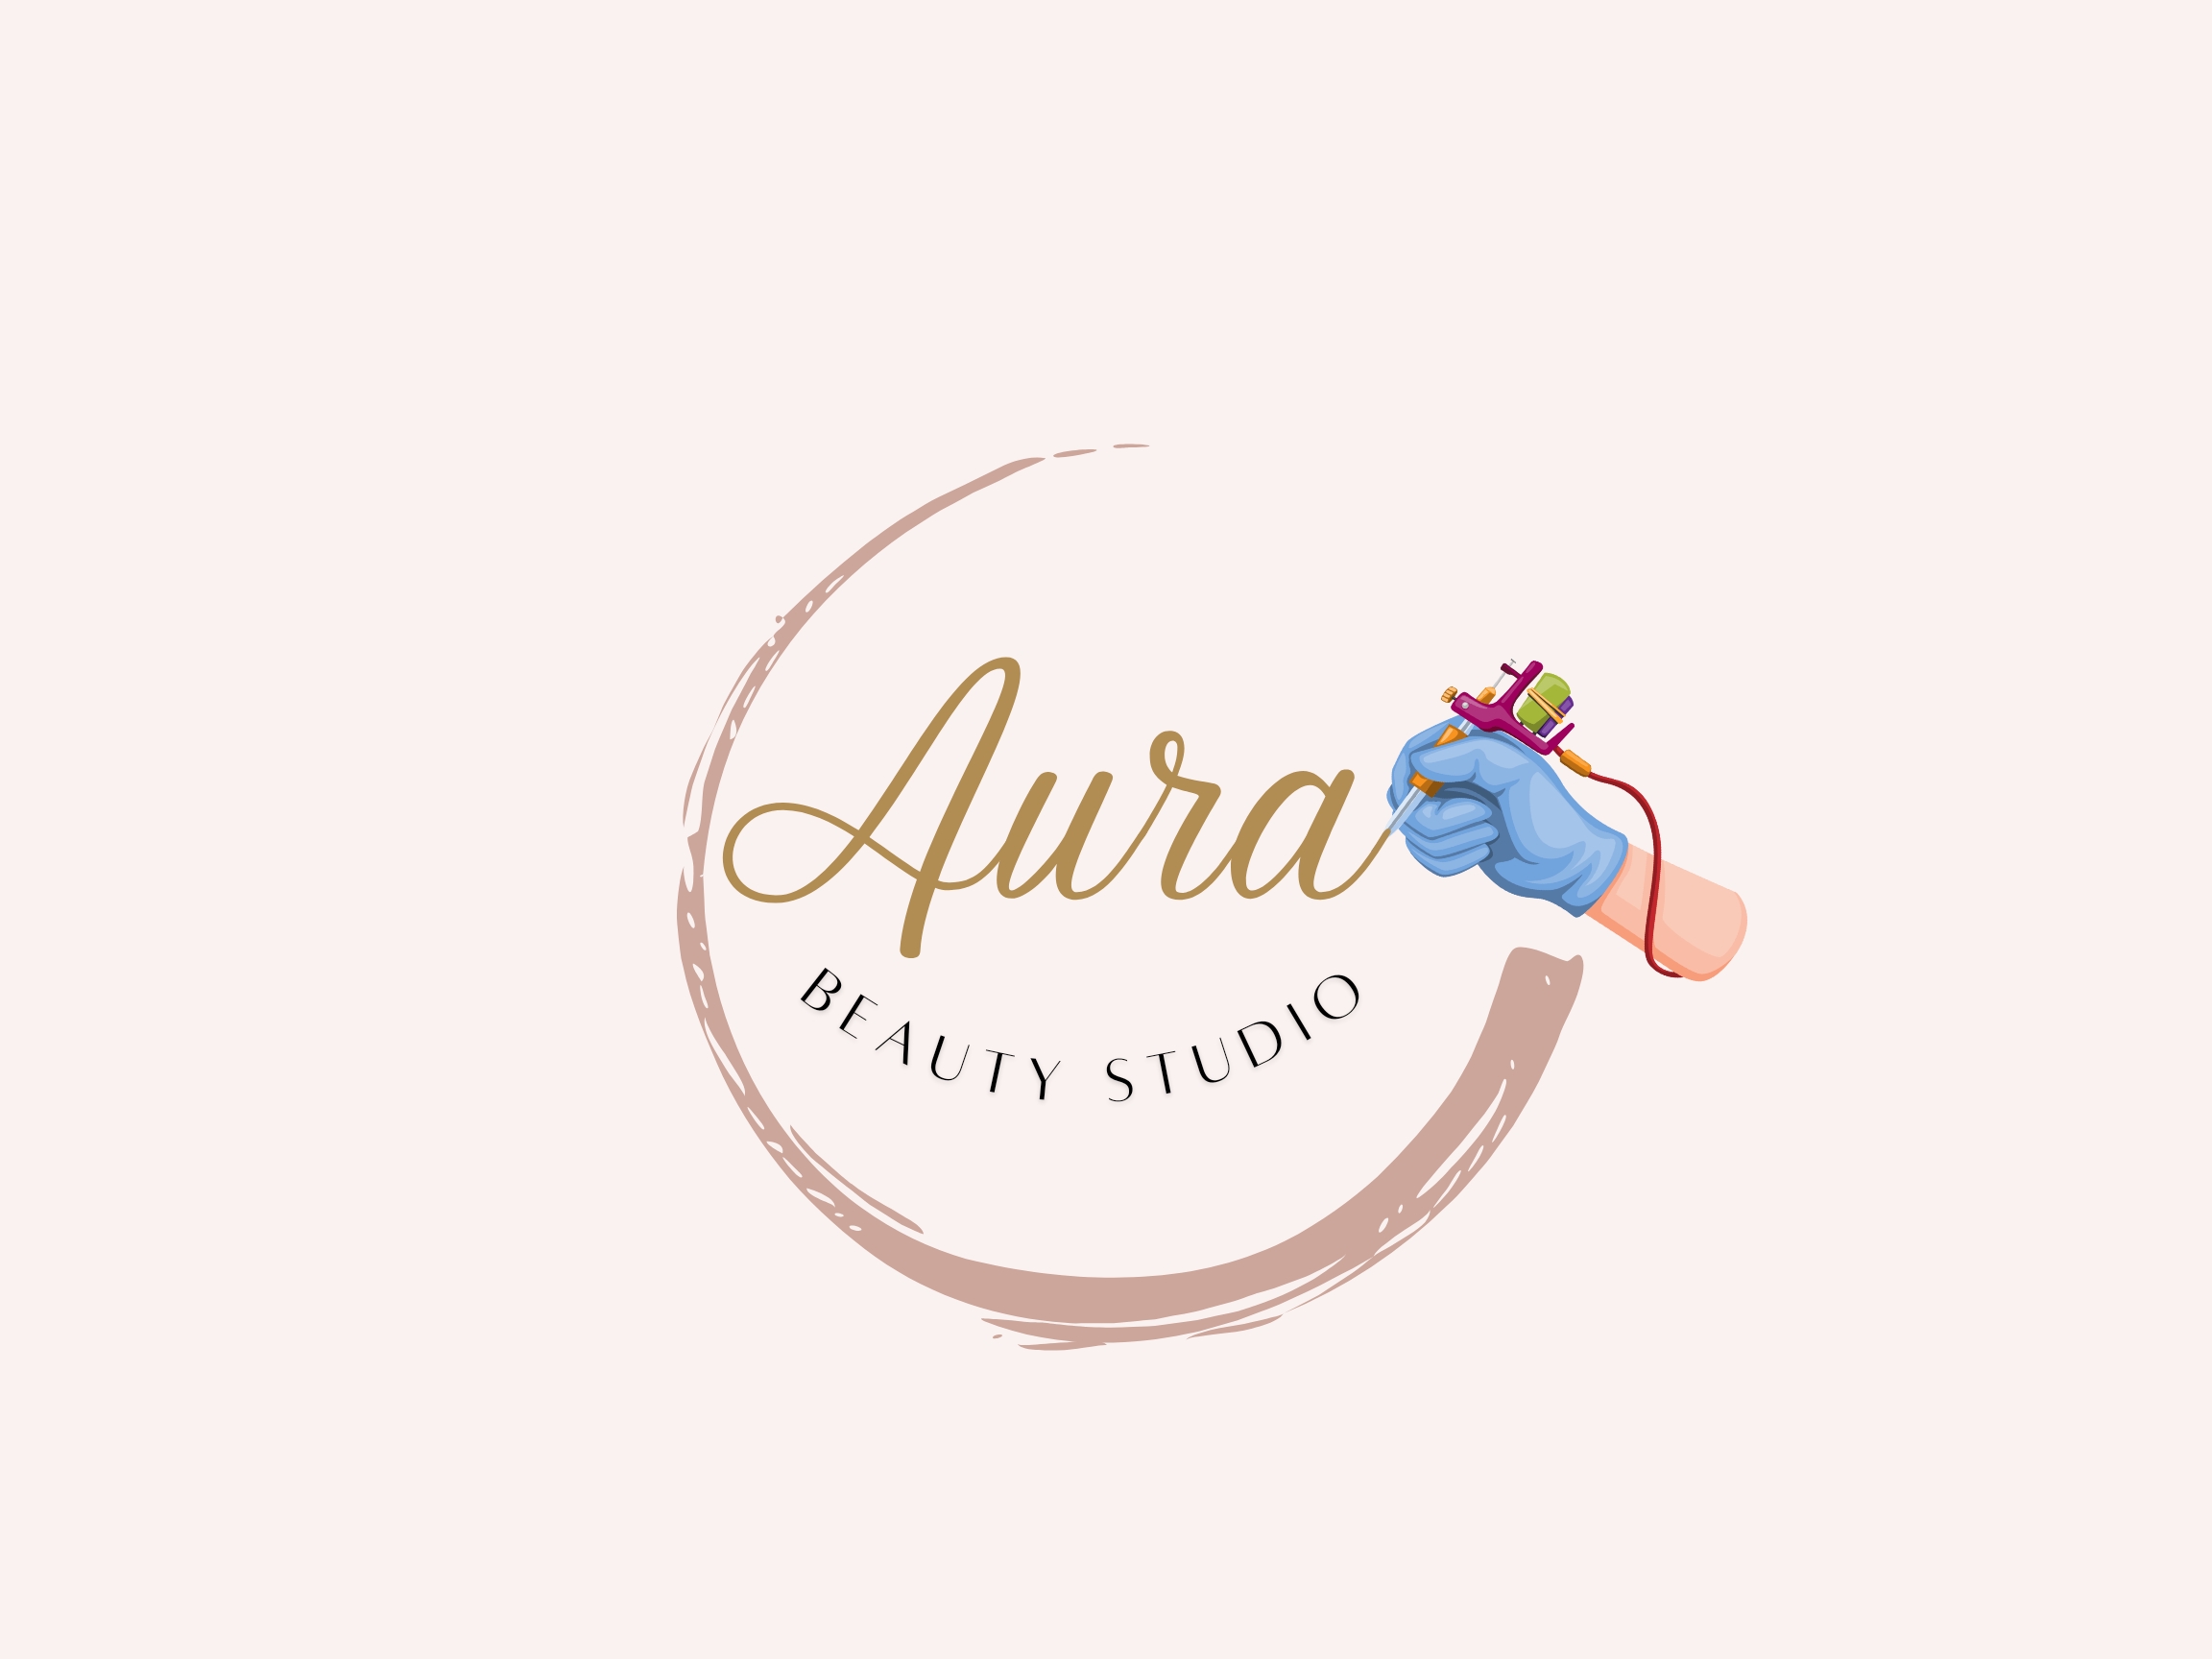 uara estudio, branding + design